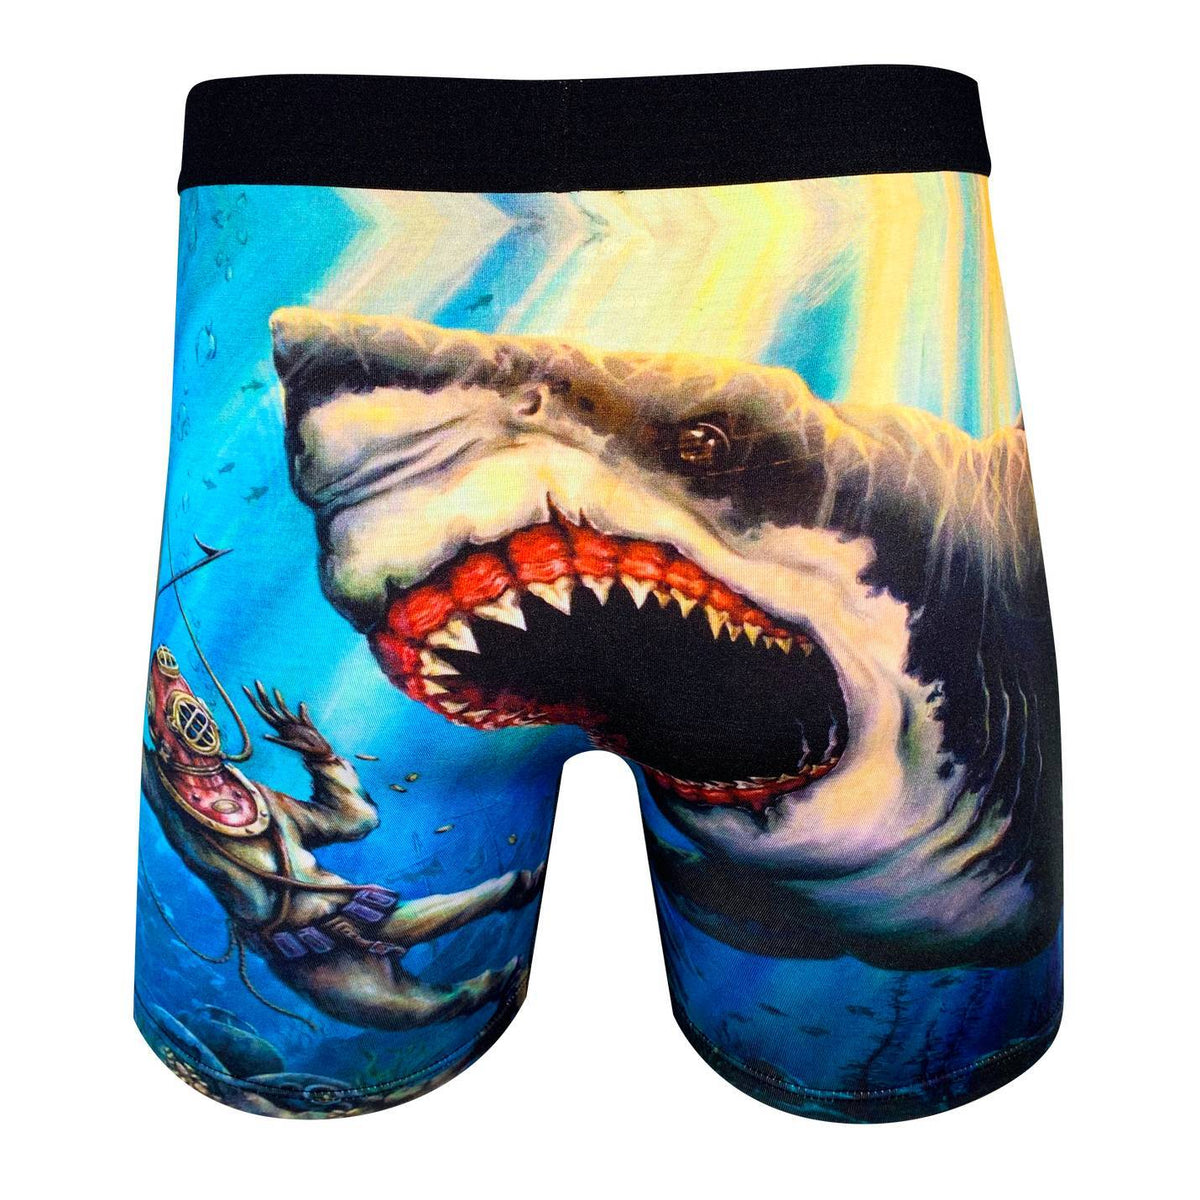 Bummer के Underwears को लेकर Sharks के बीच हुआ